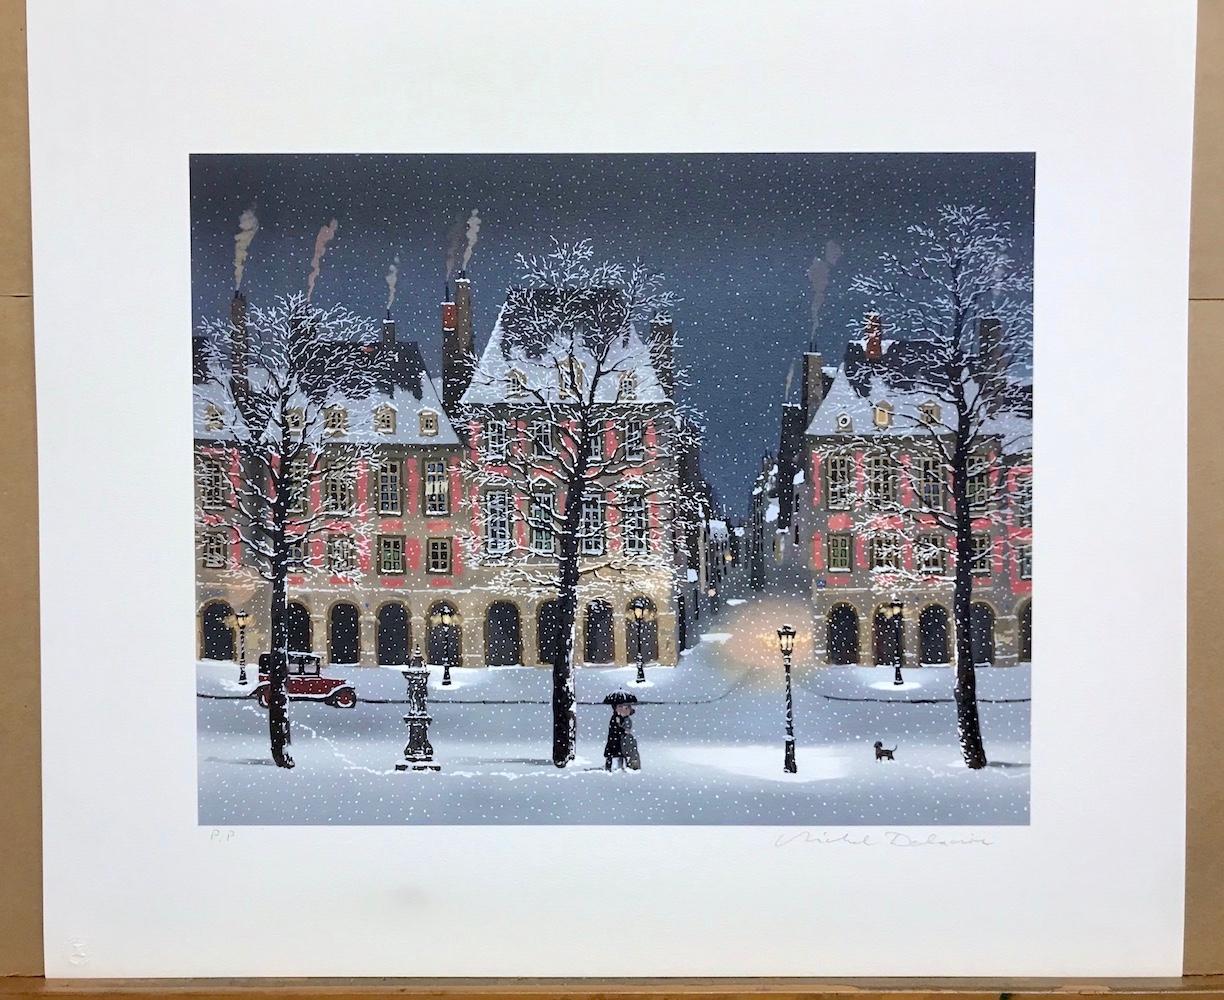 Déclaration d'amour sous la neige Snowy Paris Evening, Street Scene, Lovers, Dog - Contemporary Print by Michel Delacroix